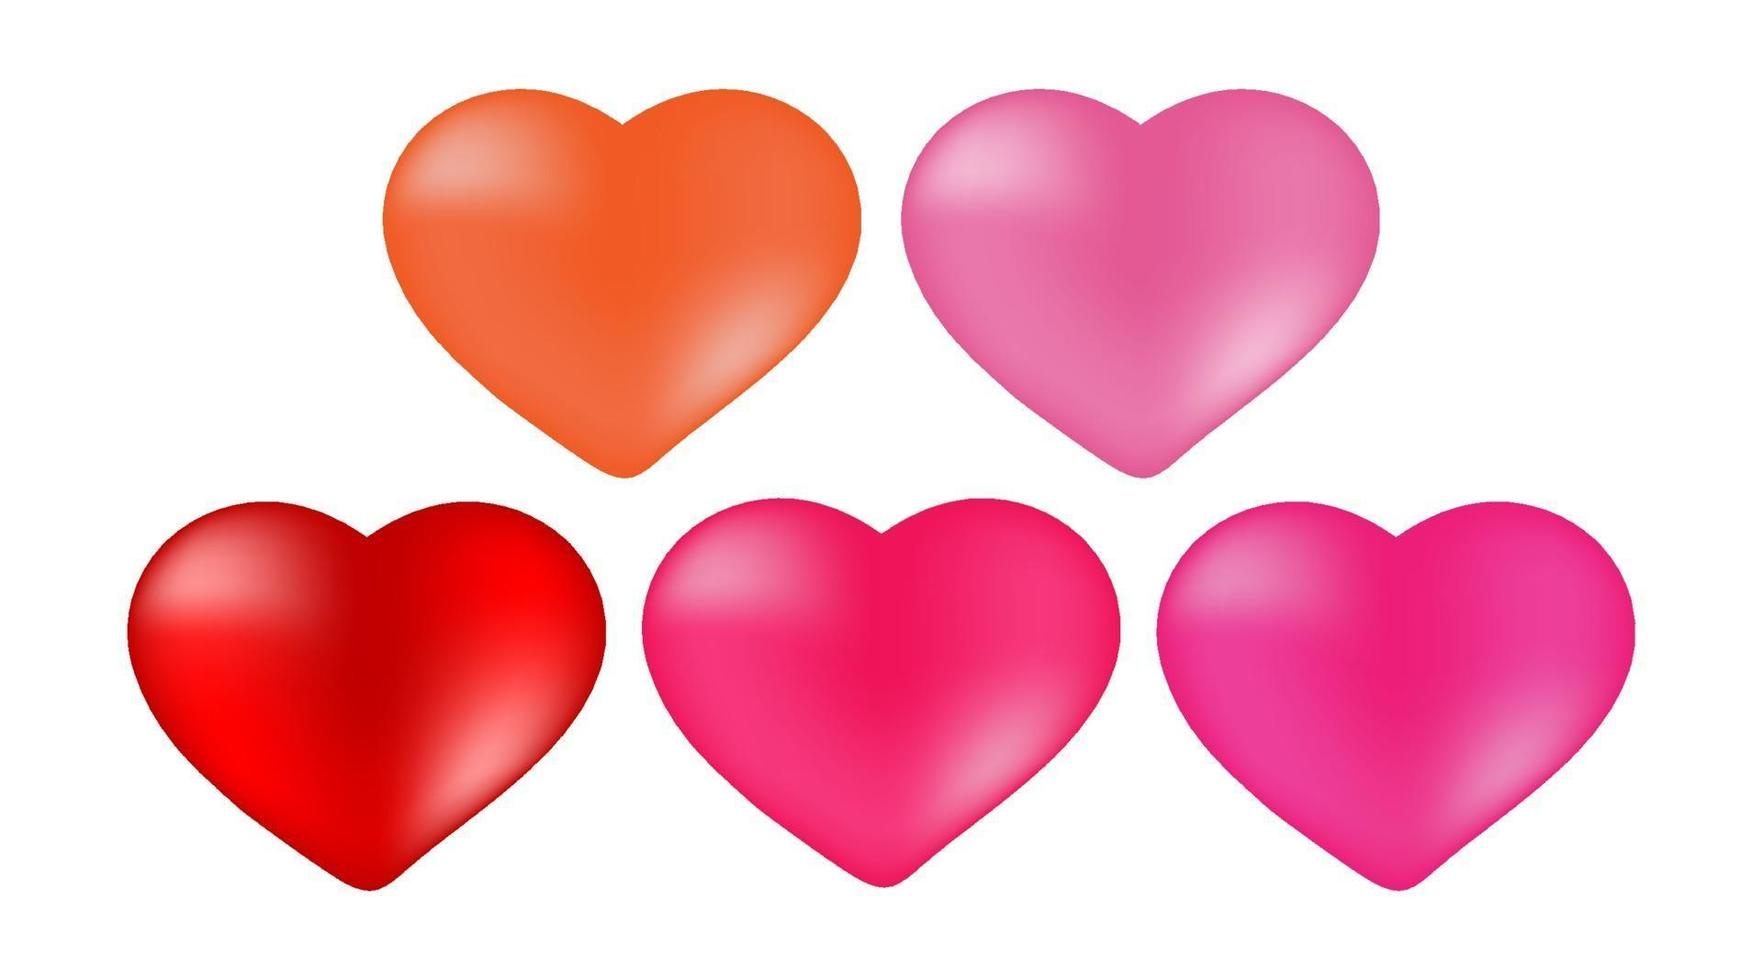 dekoratives Herzelement für Valentinstagdesign vektor